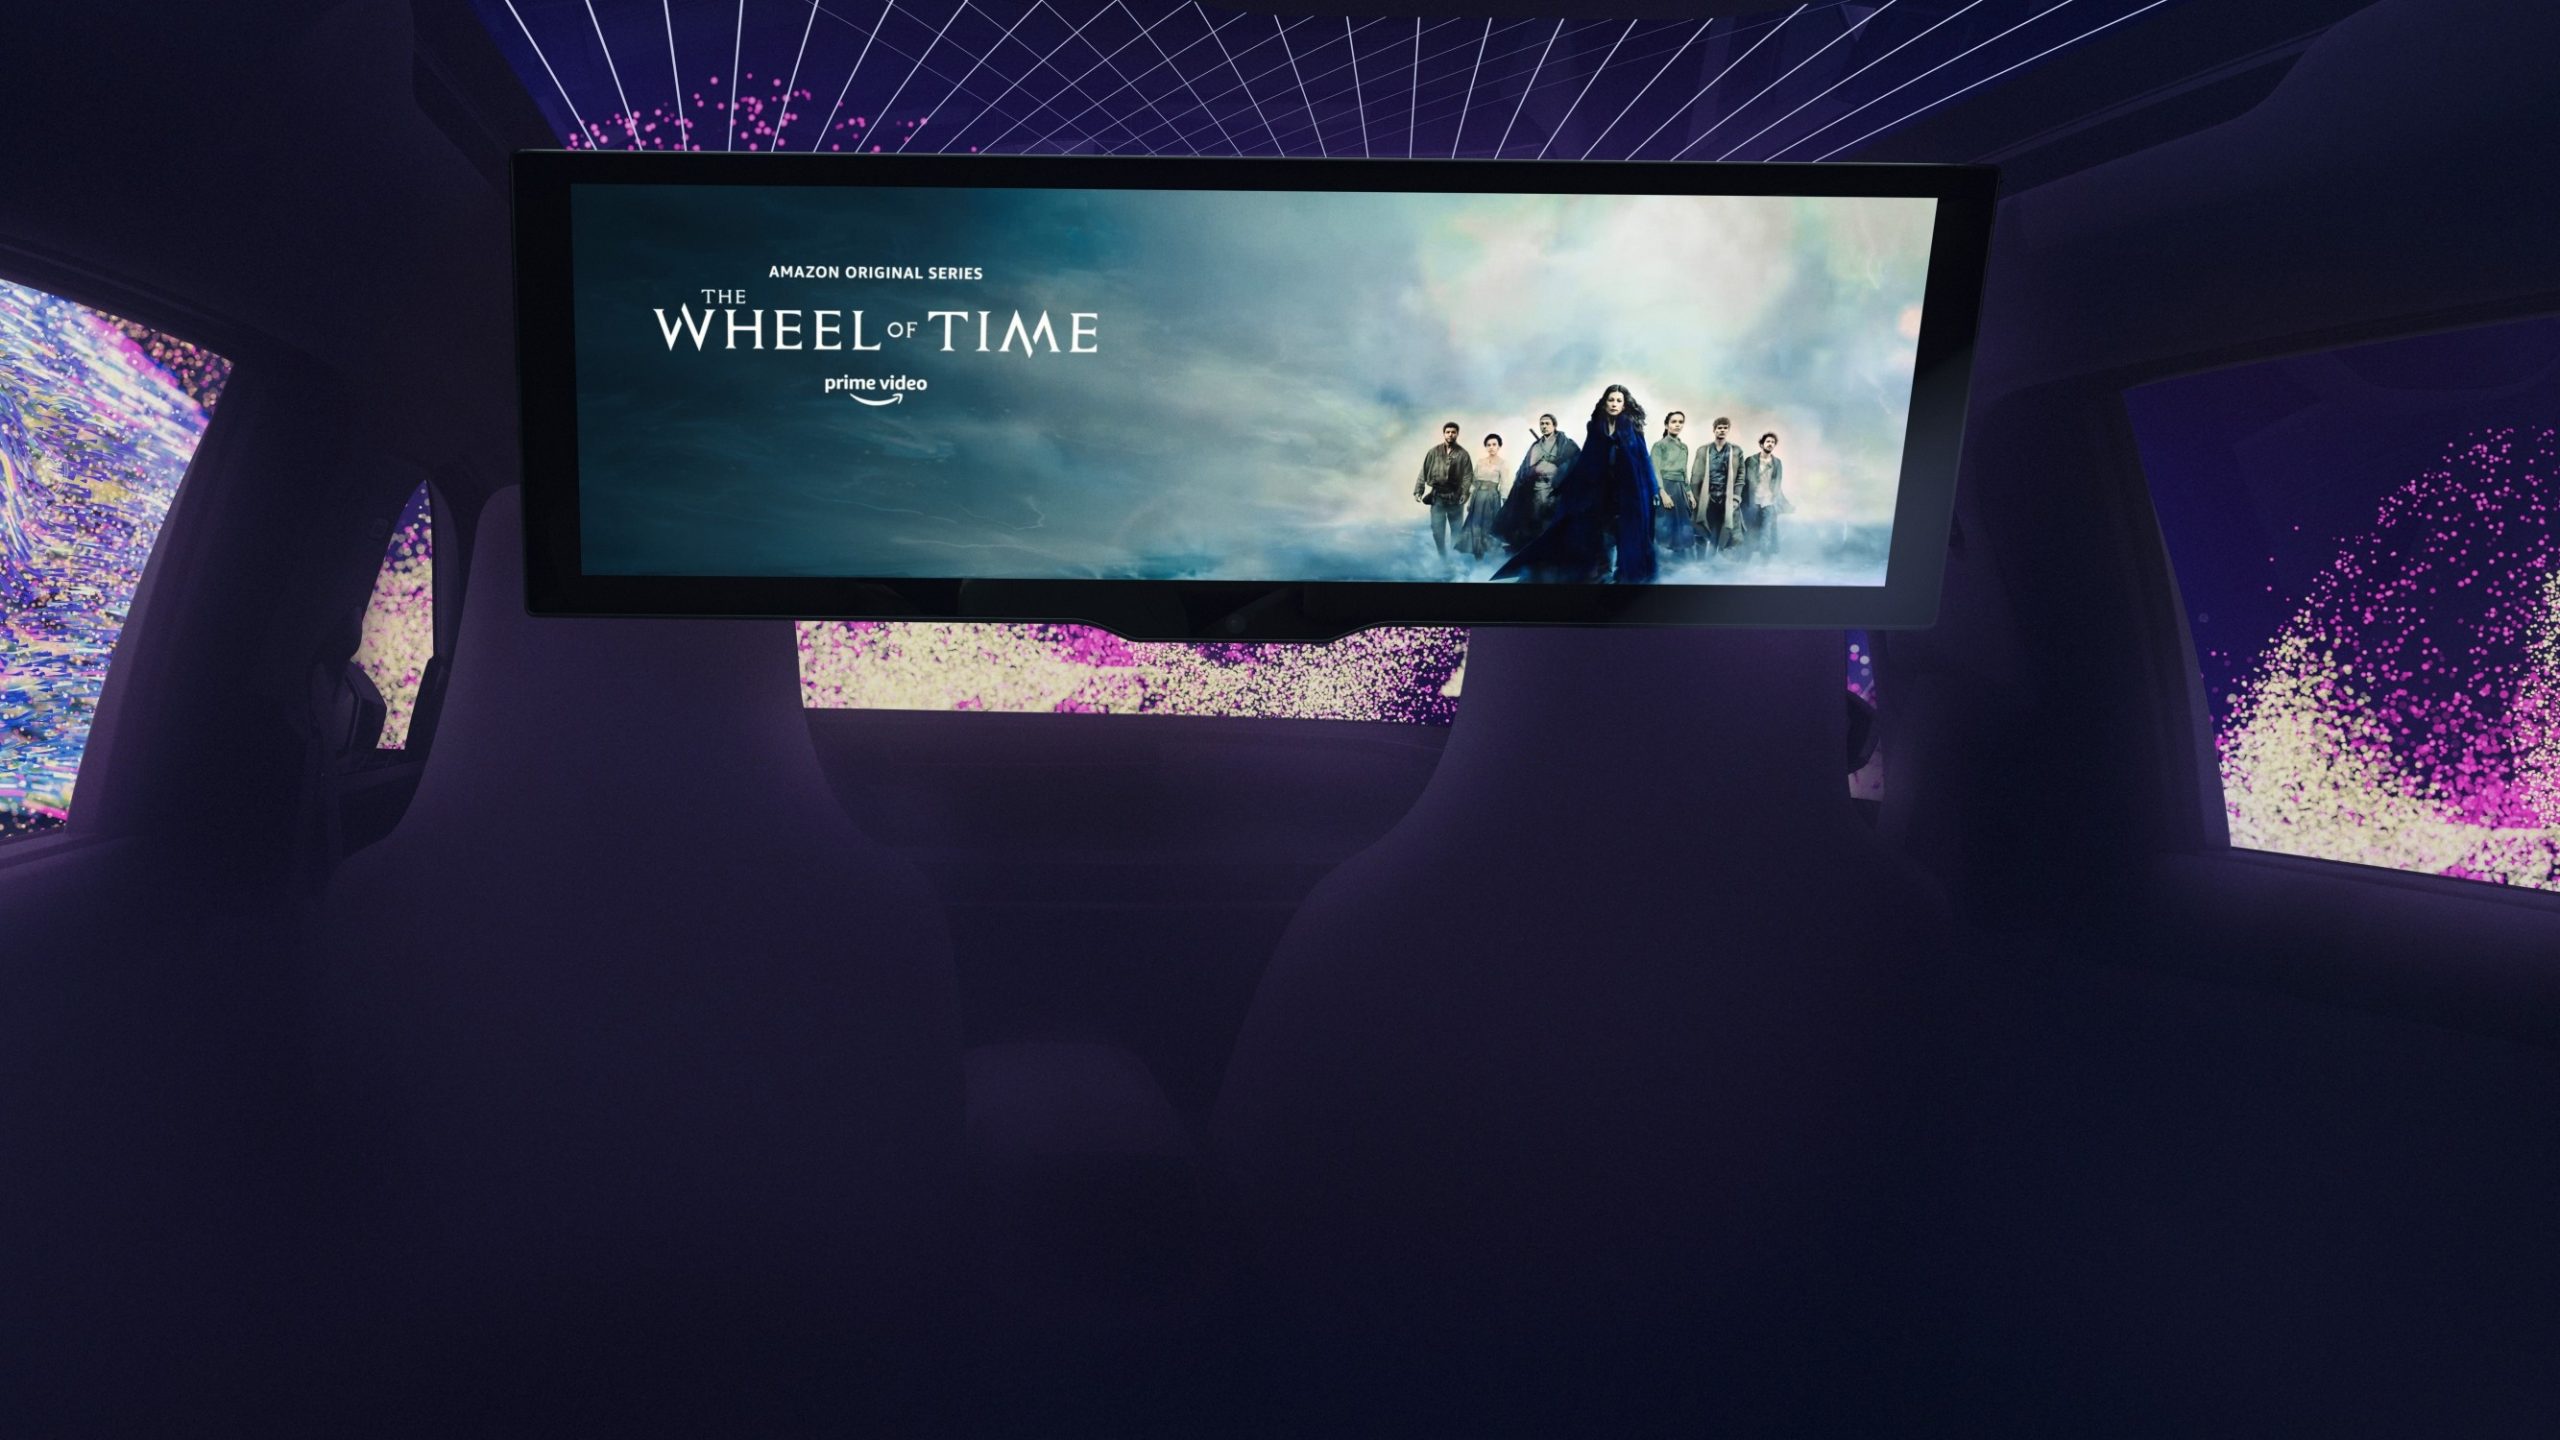 Νέα τεχνολογία μεταμορφώνει το αυτοκίνητο σε κινηματογραφική αίθουσα